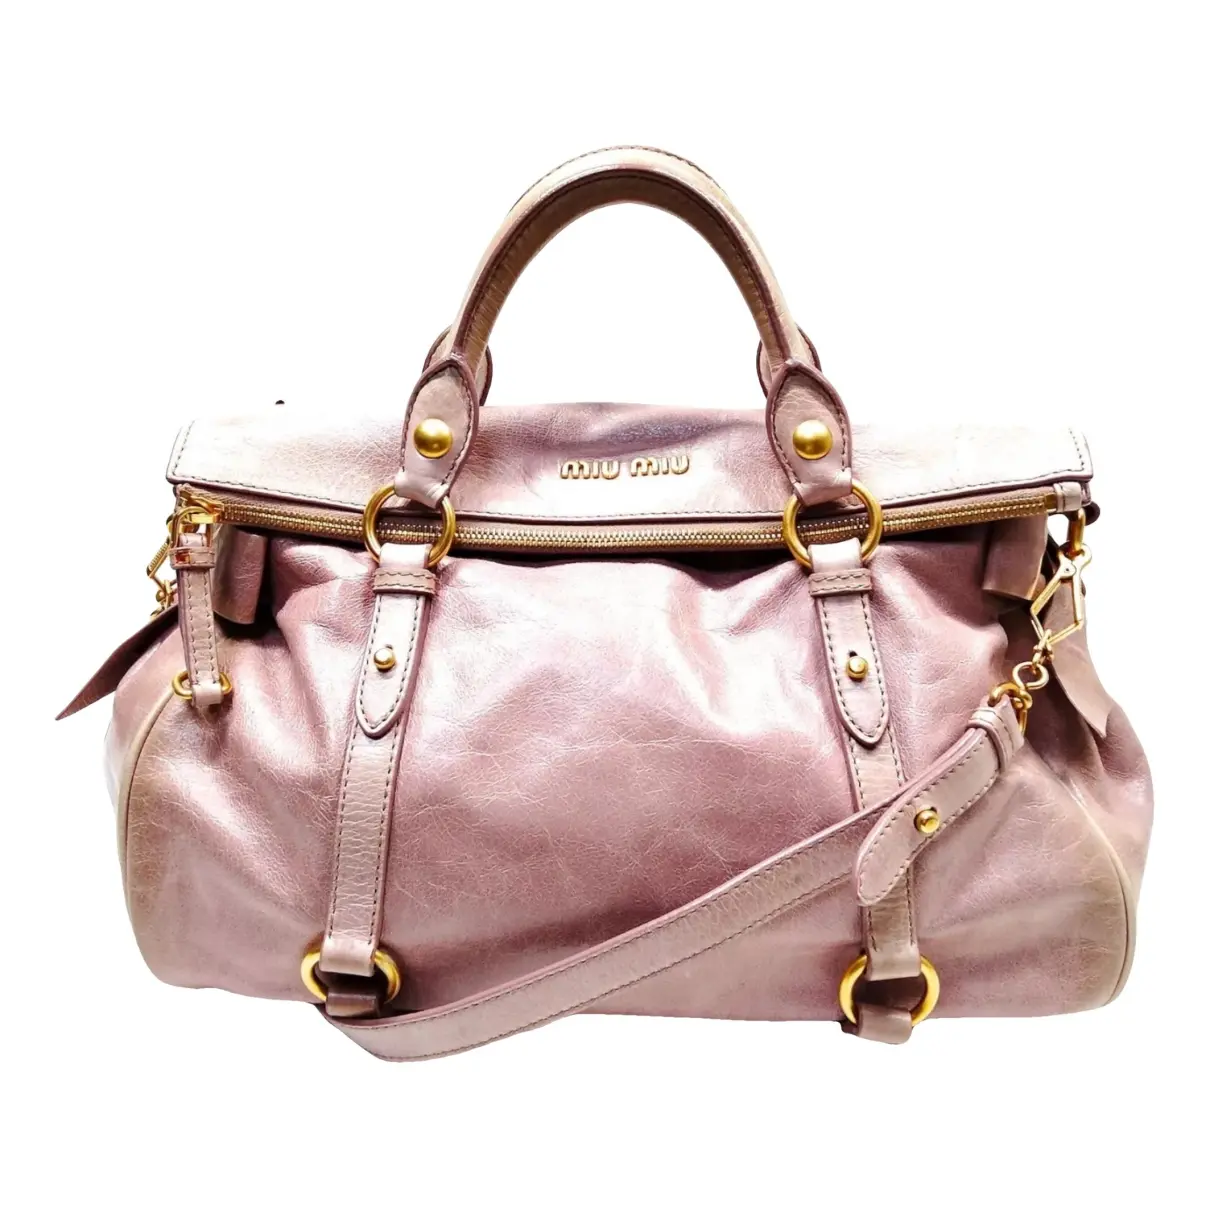 Bow bag leather handbag